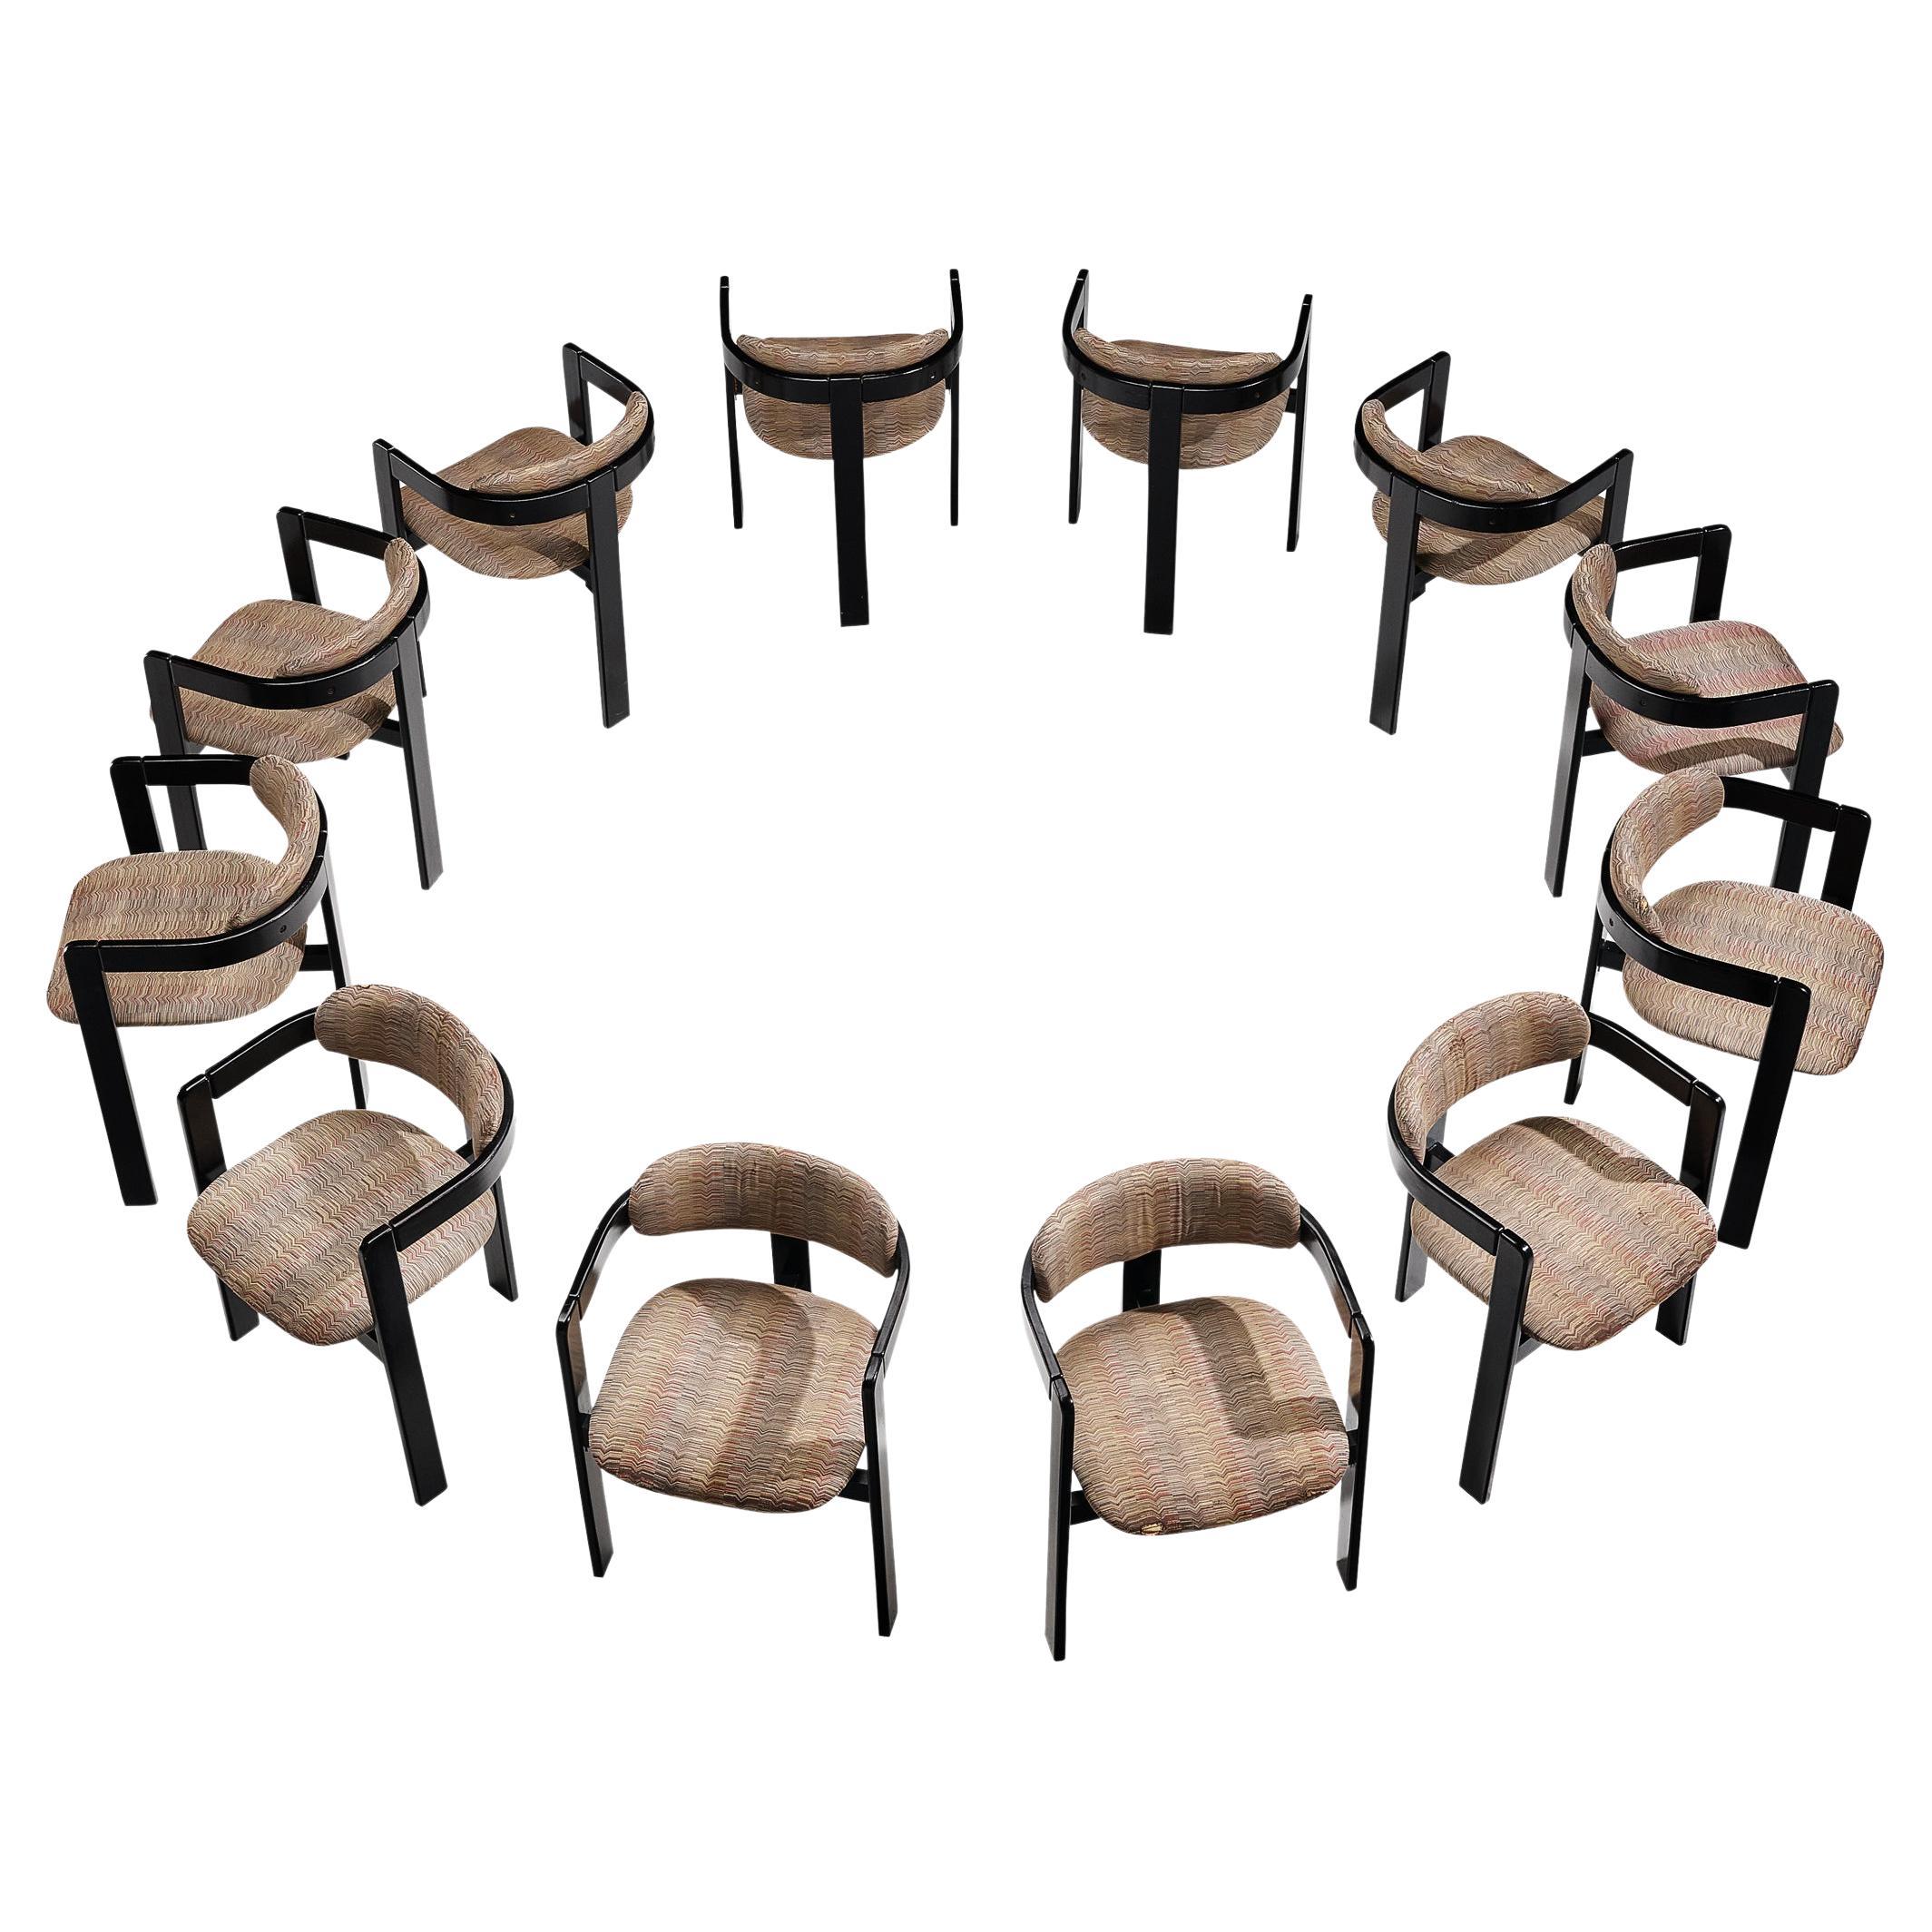 Ensemble de douze fauteuils italiens avec cadres en bois courbé